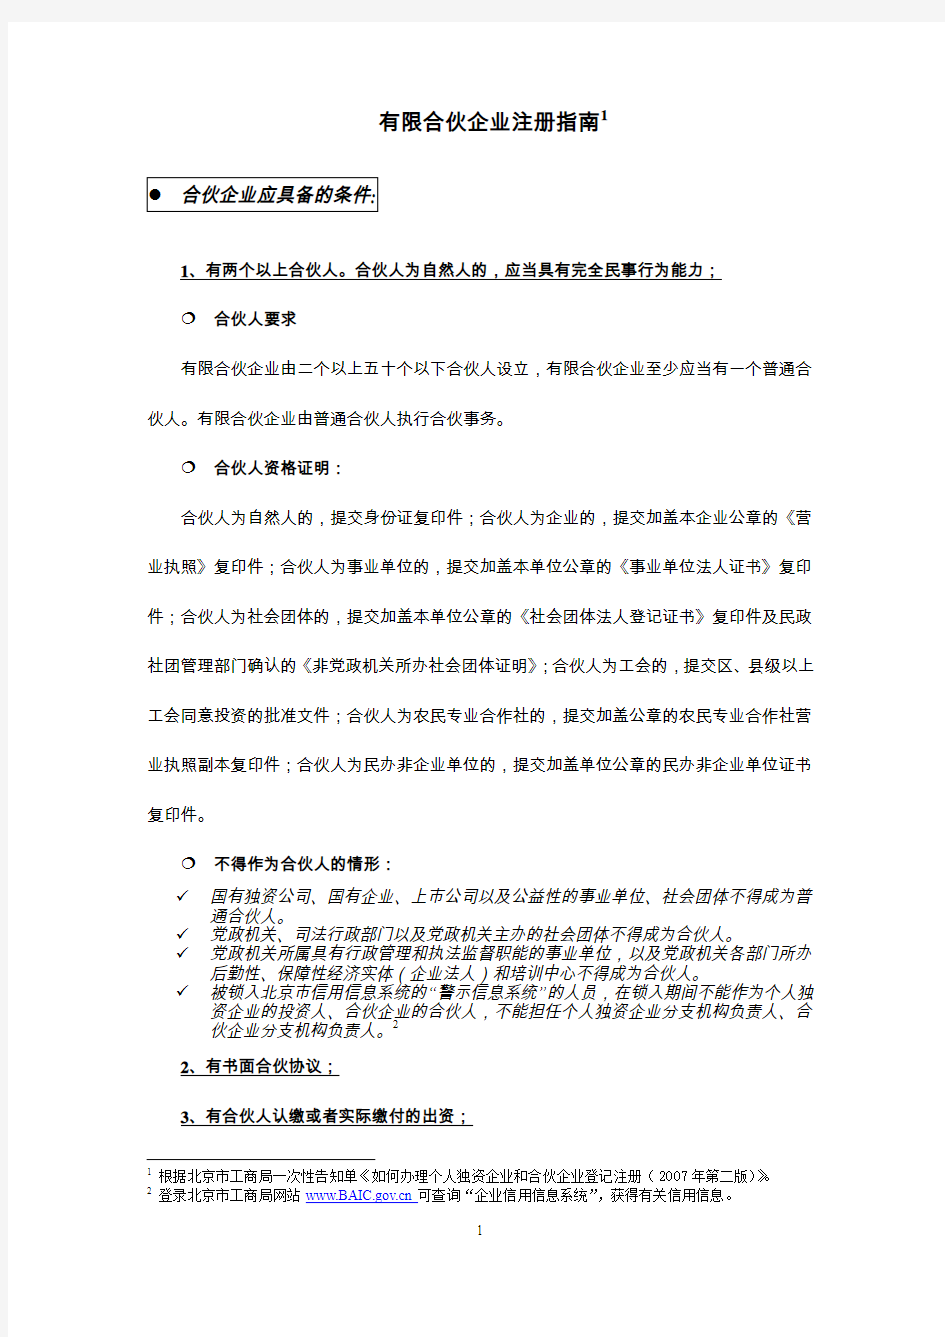 ☆北京市工商行政管理局有限合伙企业注册指南